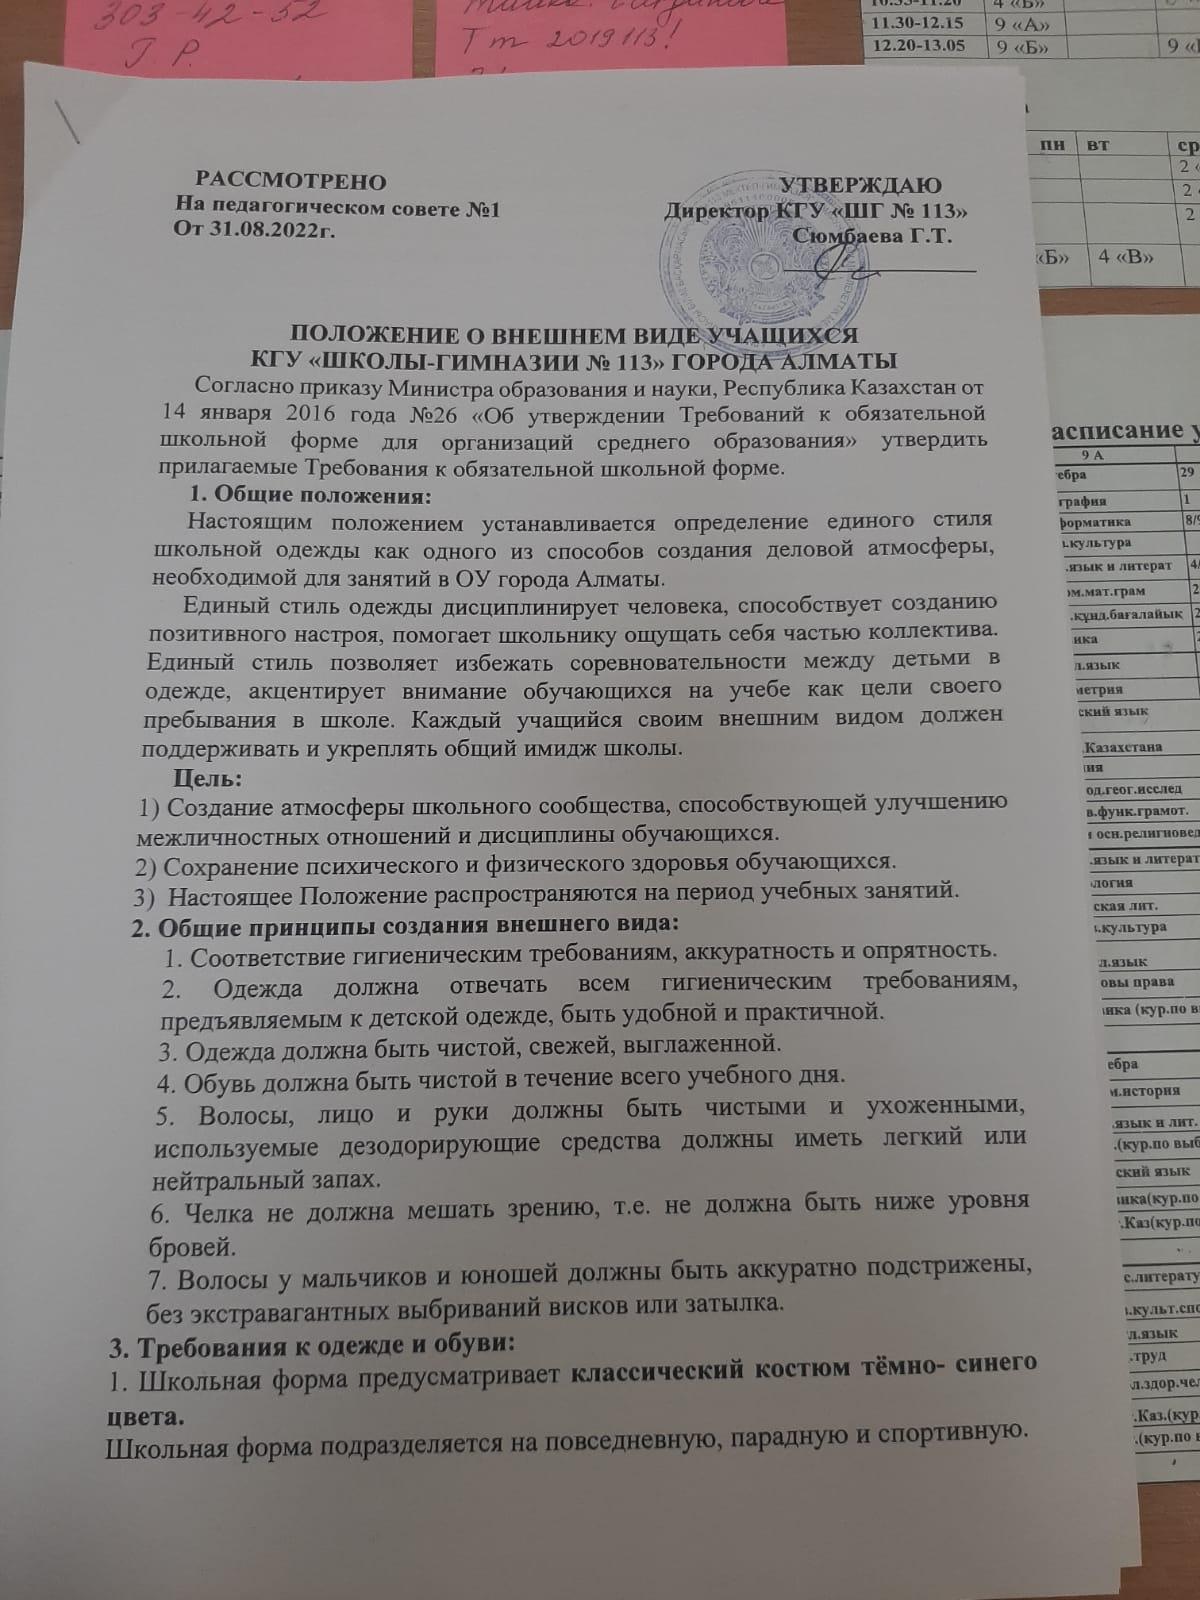 Положение об внешнем виде учащихся КГУ Школы-гимназии №113 города Алматы